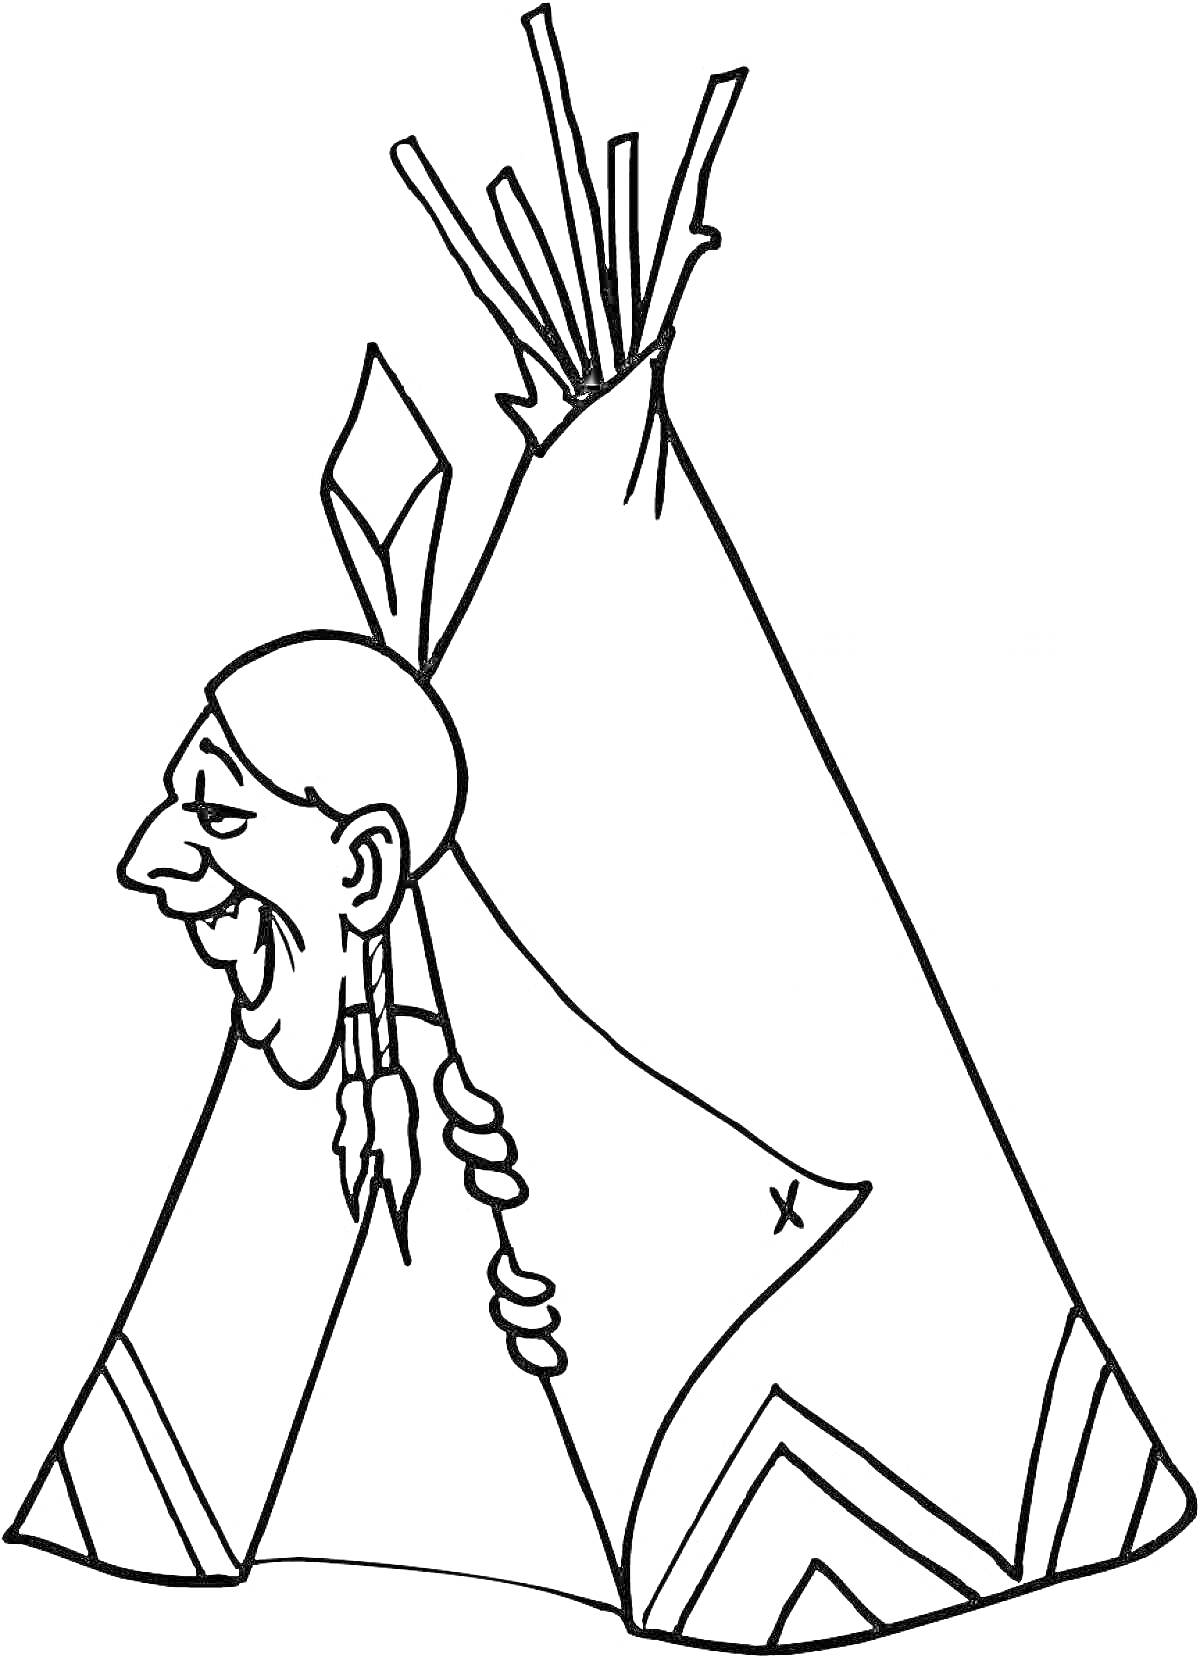 Раскраска Коренной американец возле типи с украшениями и элементами племени